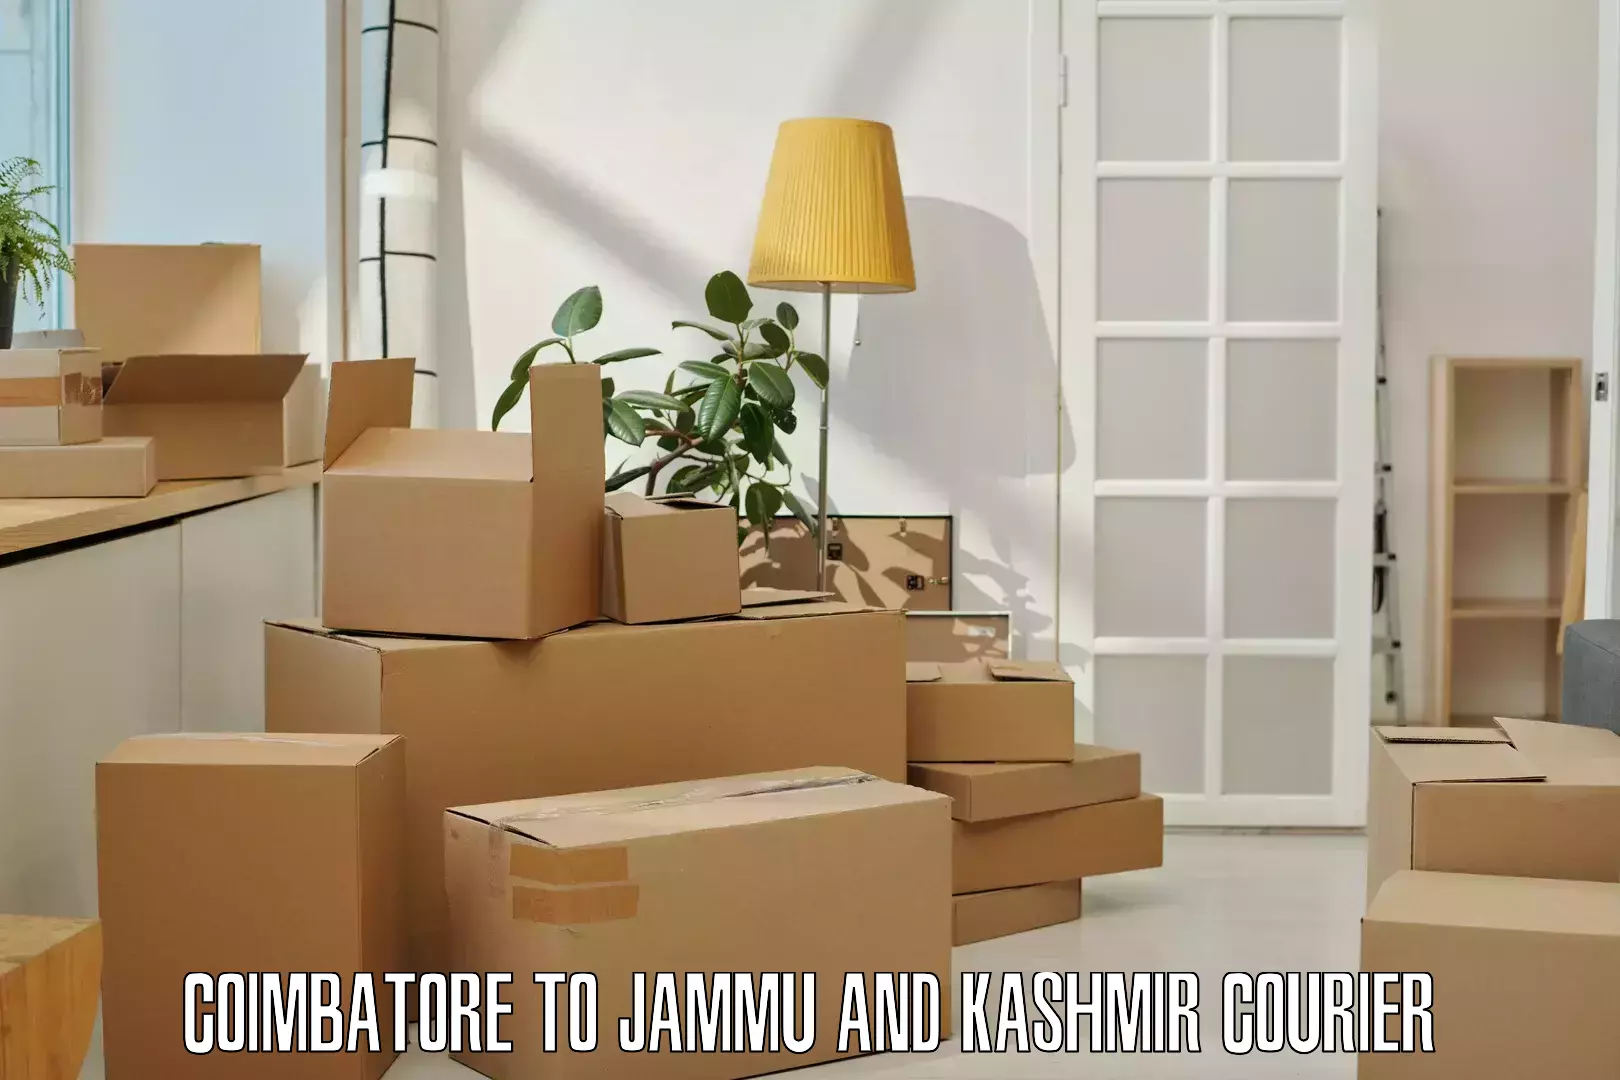 Full-service courier options Coimbatore to Birpur Samba